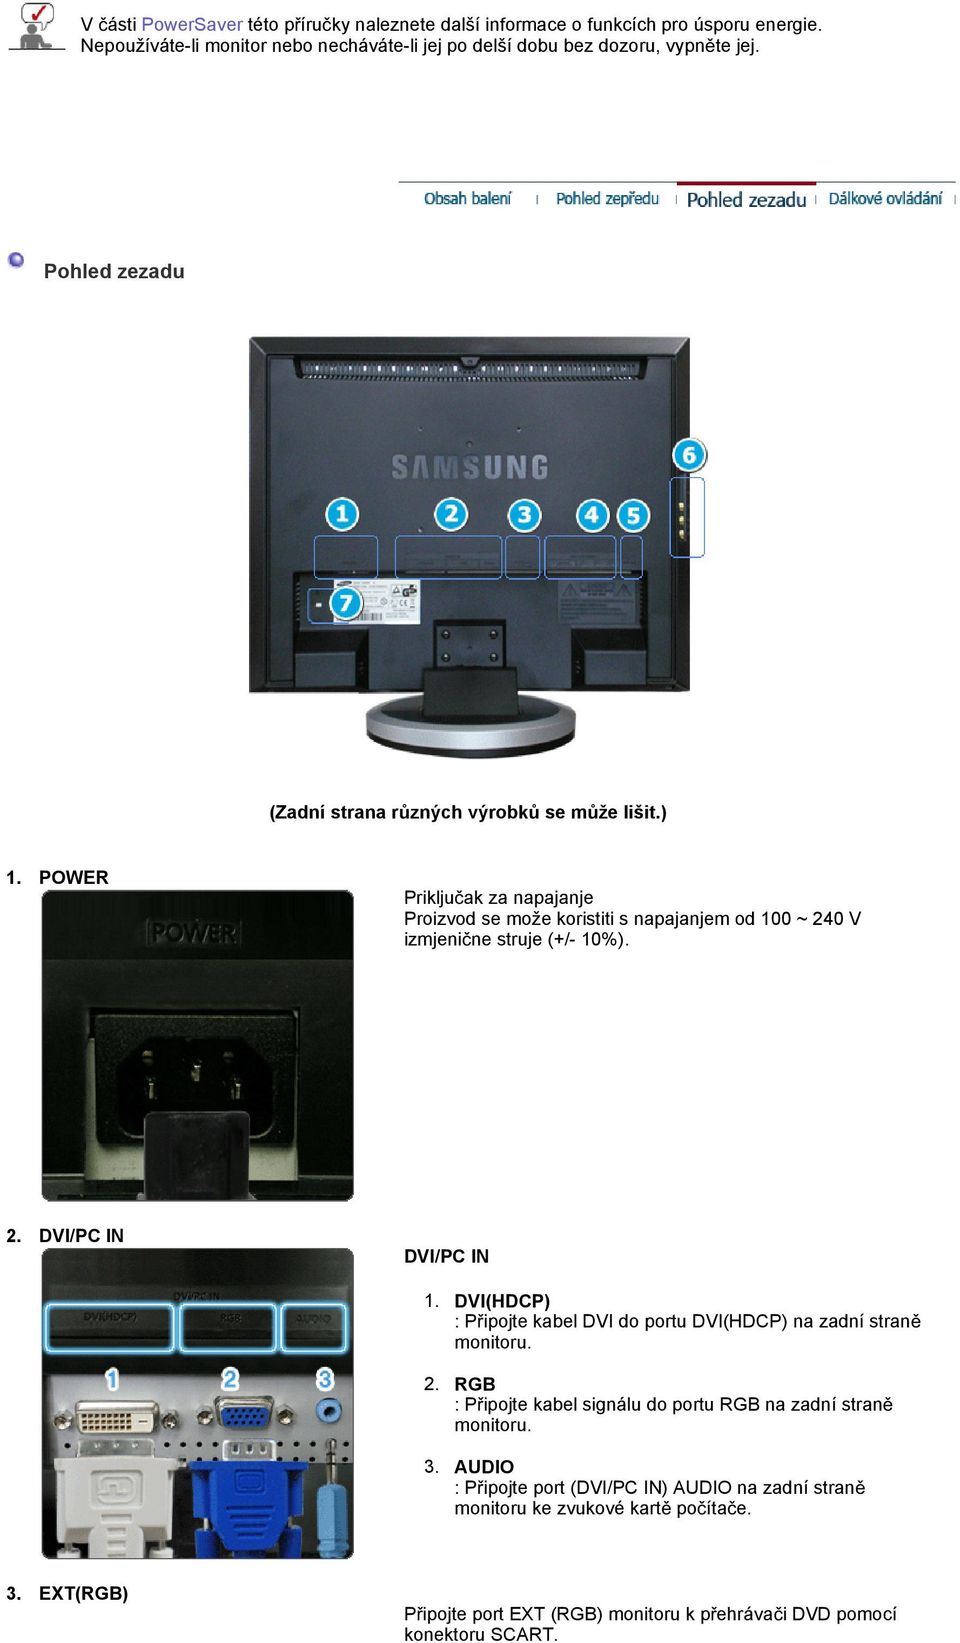 2. DVI/PC IN DVI/PC IN 1. DVI(HDCP) : P ipojte kabel DVI do portu DVI(HDCP) na zadní stran monitoru. 2. RGB : P ipojte kabel signálu do portu RGB na zadní stran monitoru. 3.